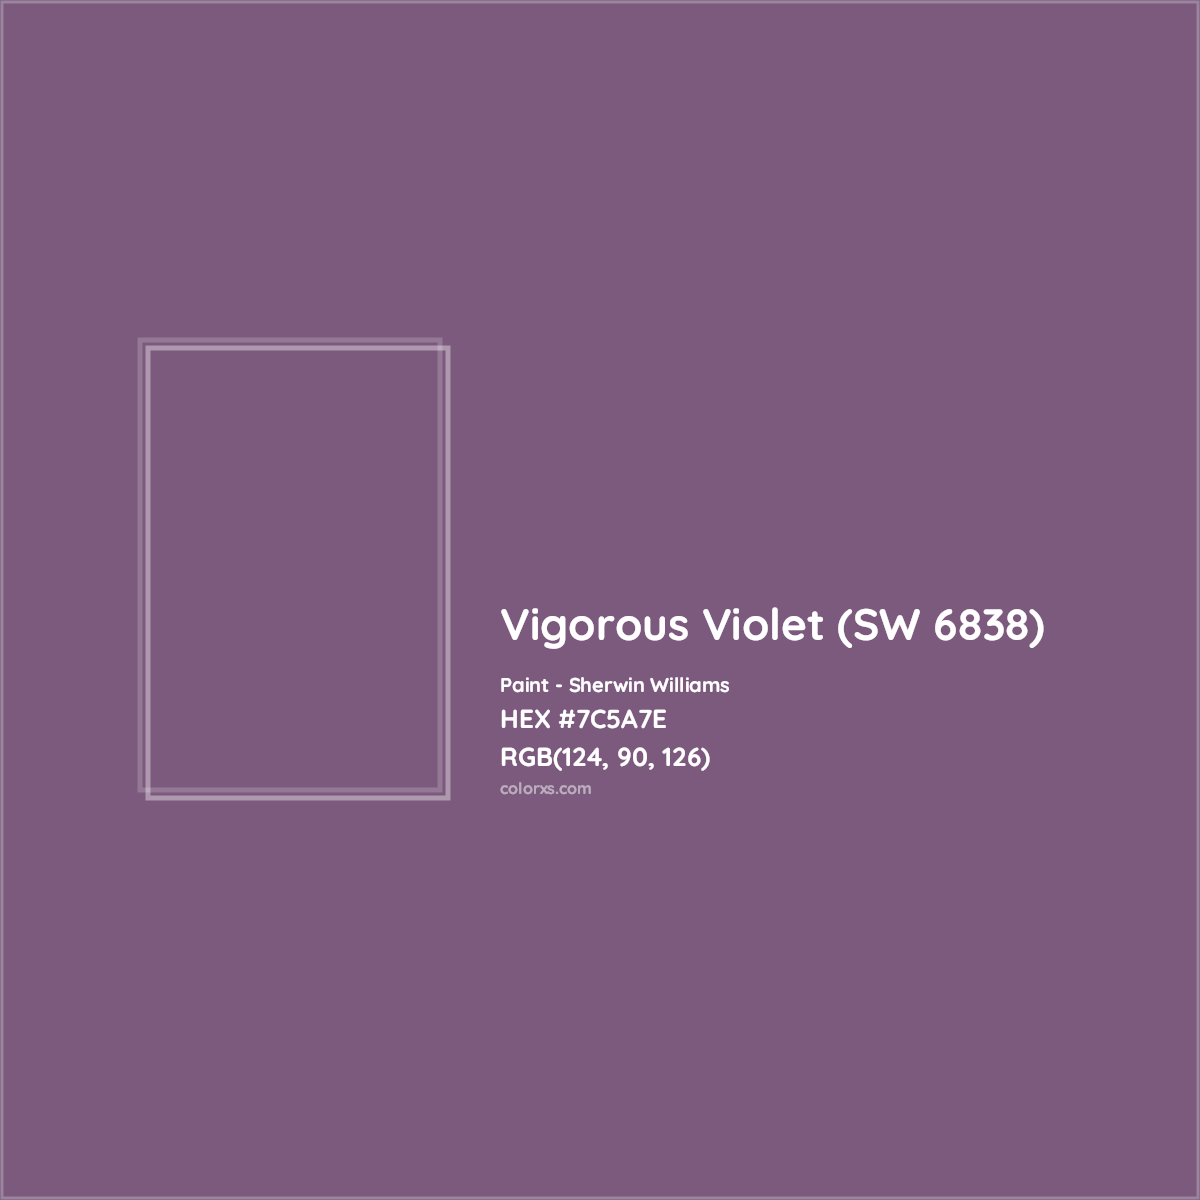 HEX #7C5A7E Vigorous Violet (SW 6838) Paint Sherwin Williams - Color Code